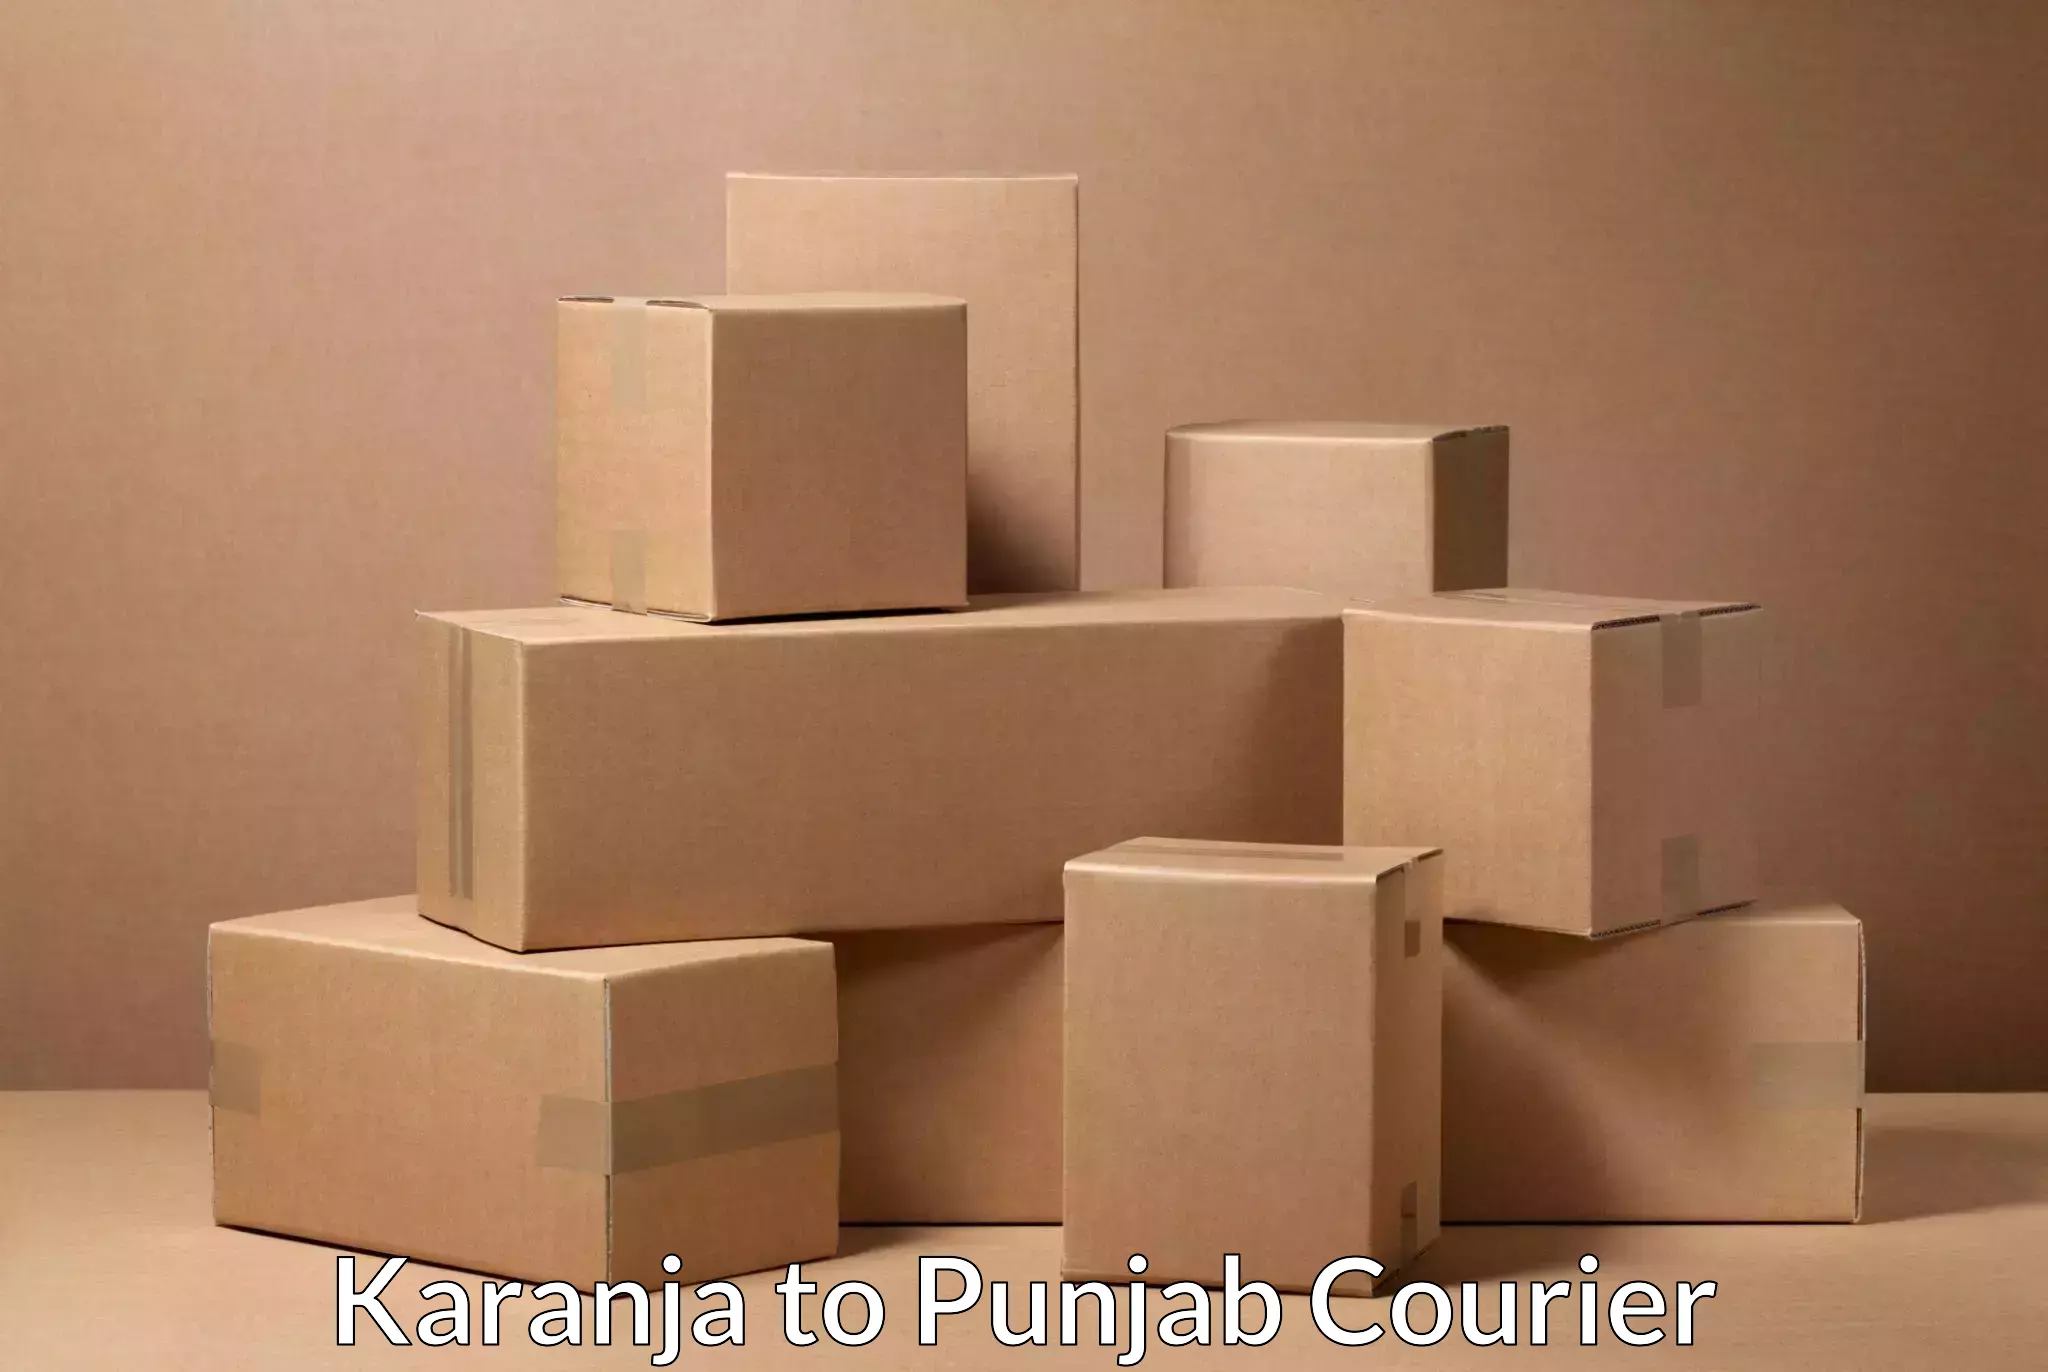 Reliable logistics providers Karanja to Dinanagar